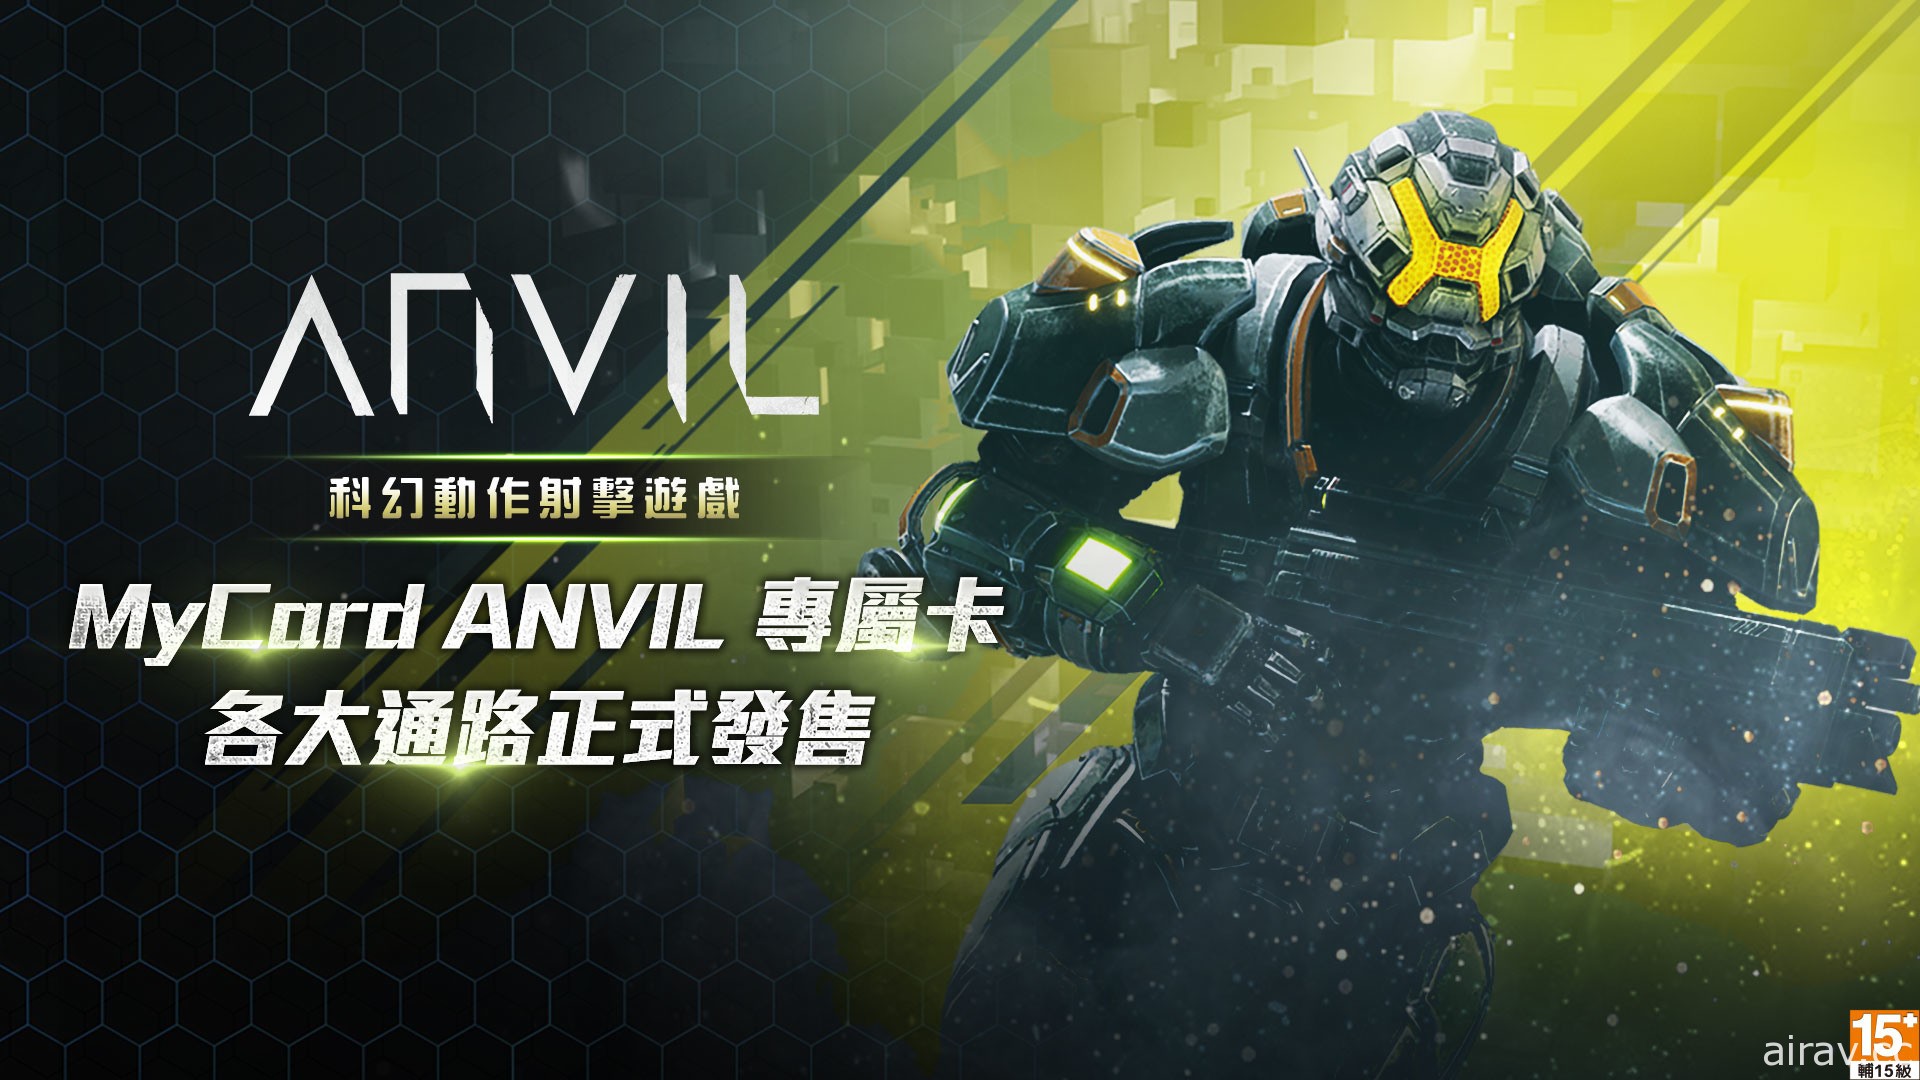 智凡迪宣布獲得 ACTION SQUARE 動作射擊遊戲《ANVIL》授權經銷合作